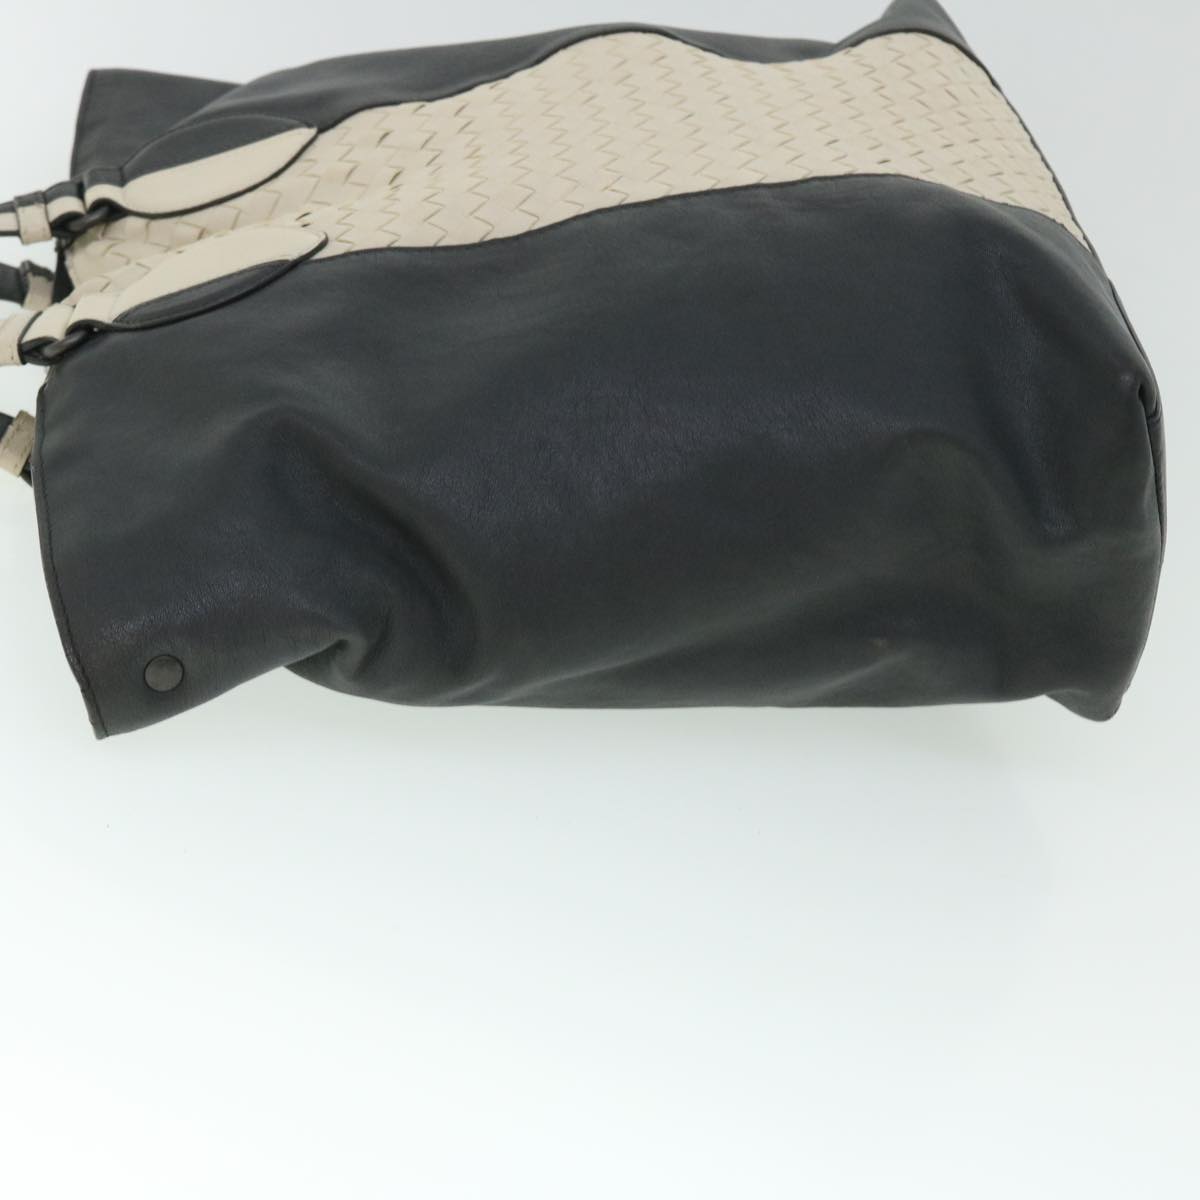 BOTTEGA VENETA INTRECCIATO Tote Bag Leather 2way White Gray Auth bs8218